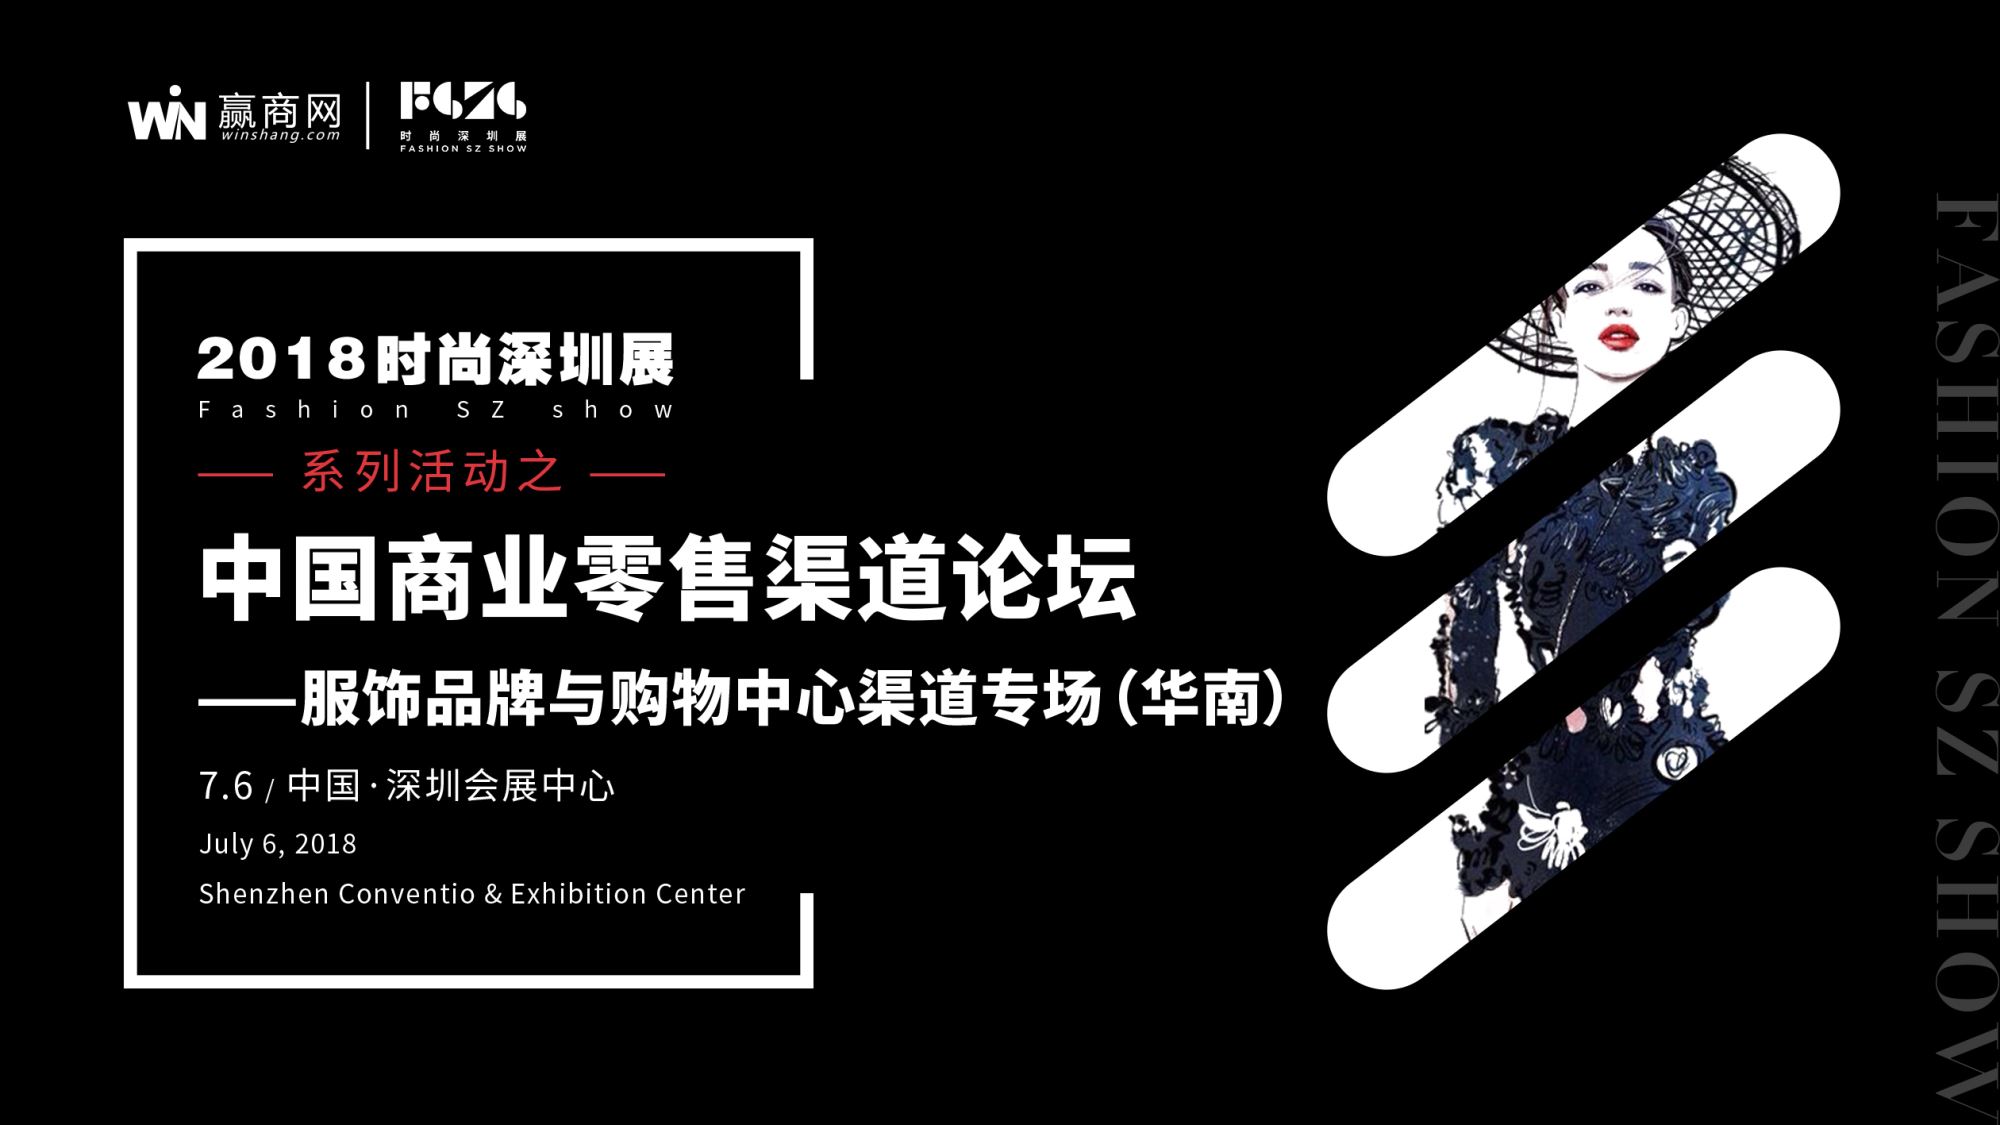 服飾品牌與購物中心渠道專場論壇于7月6日深圳舉行-中國網地産